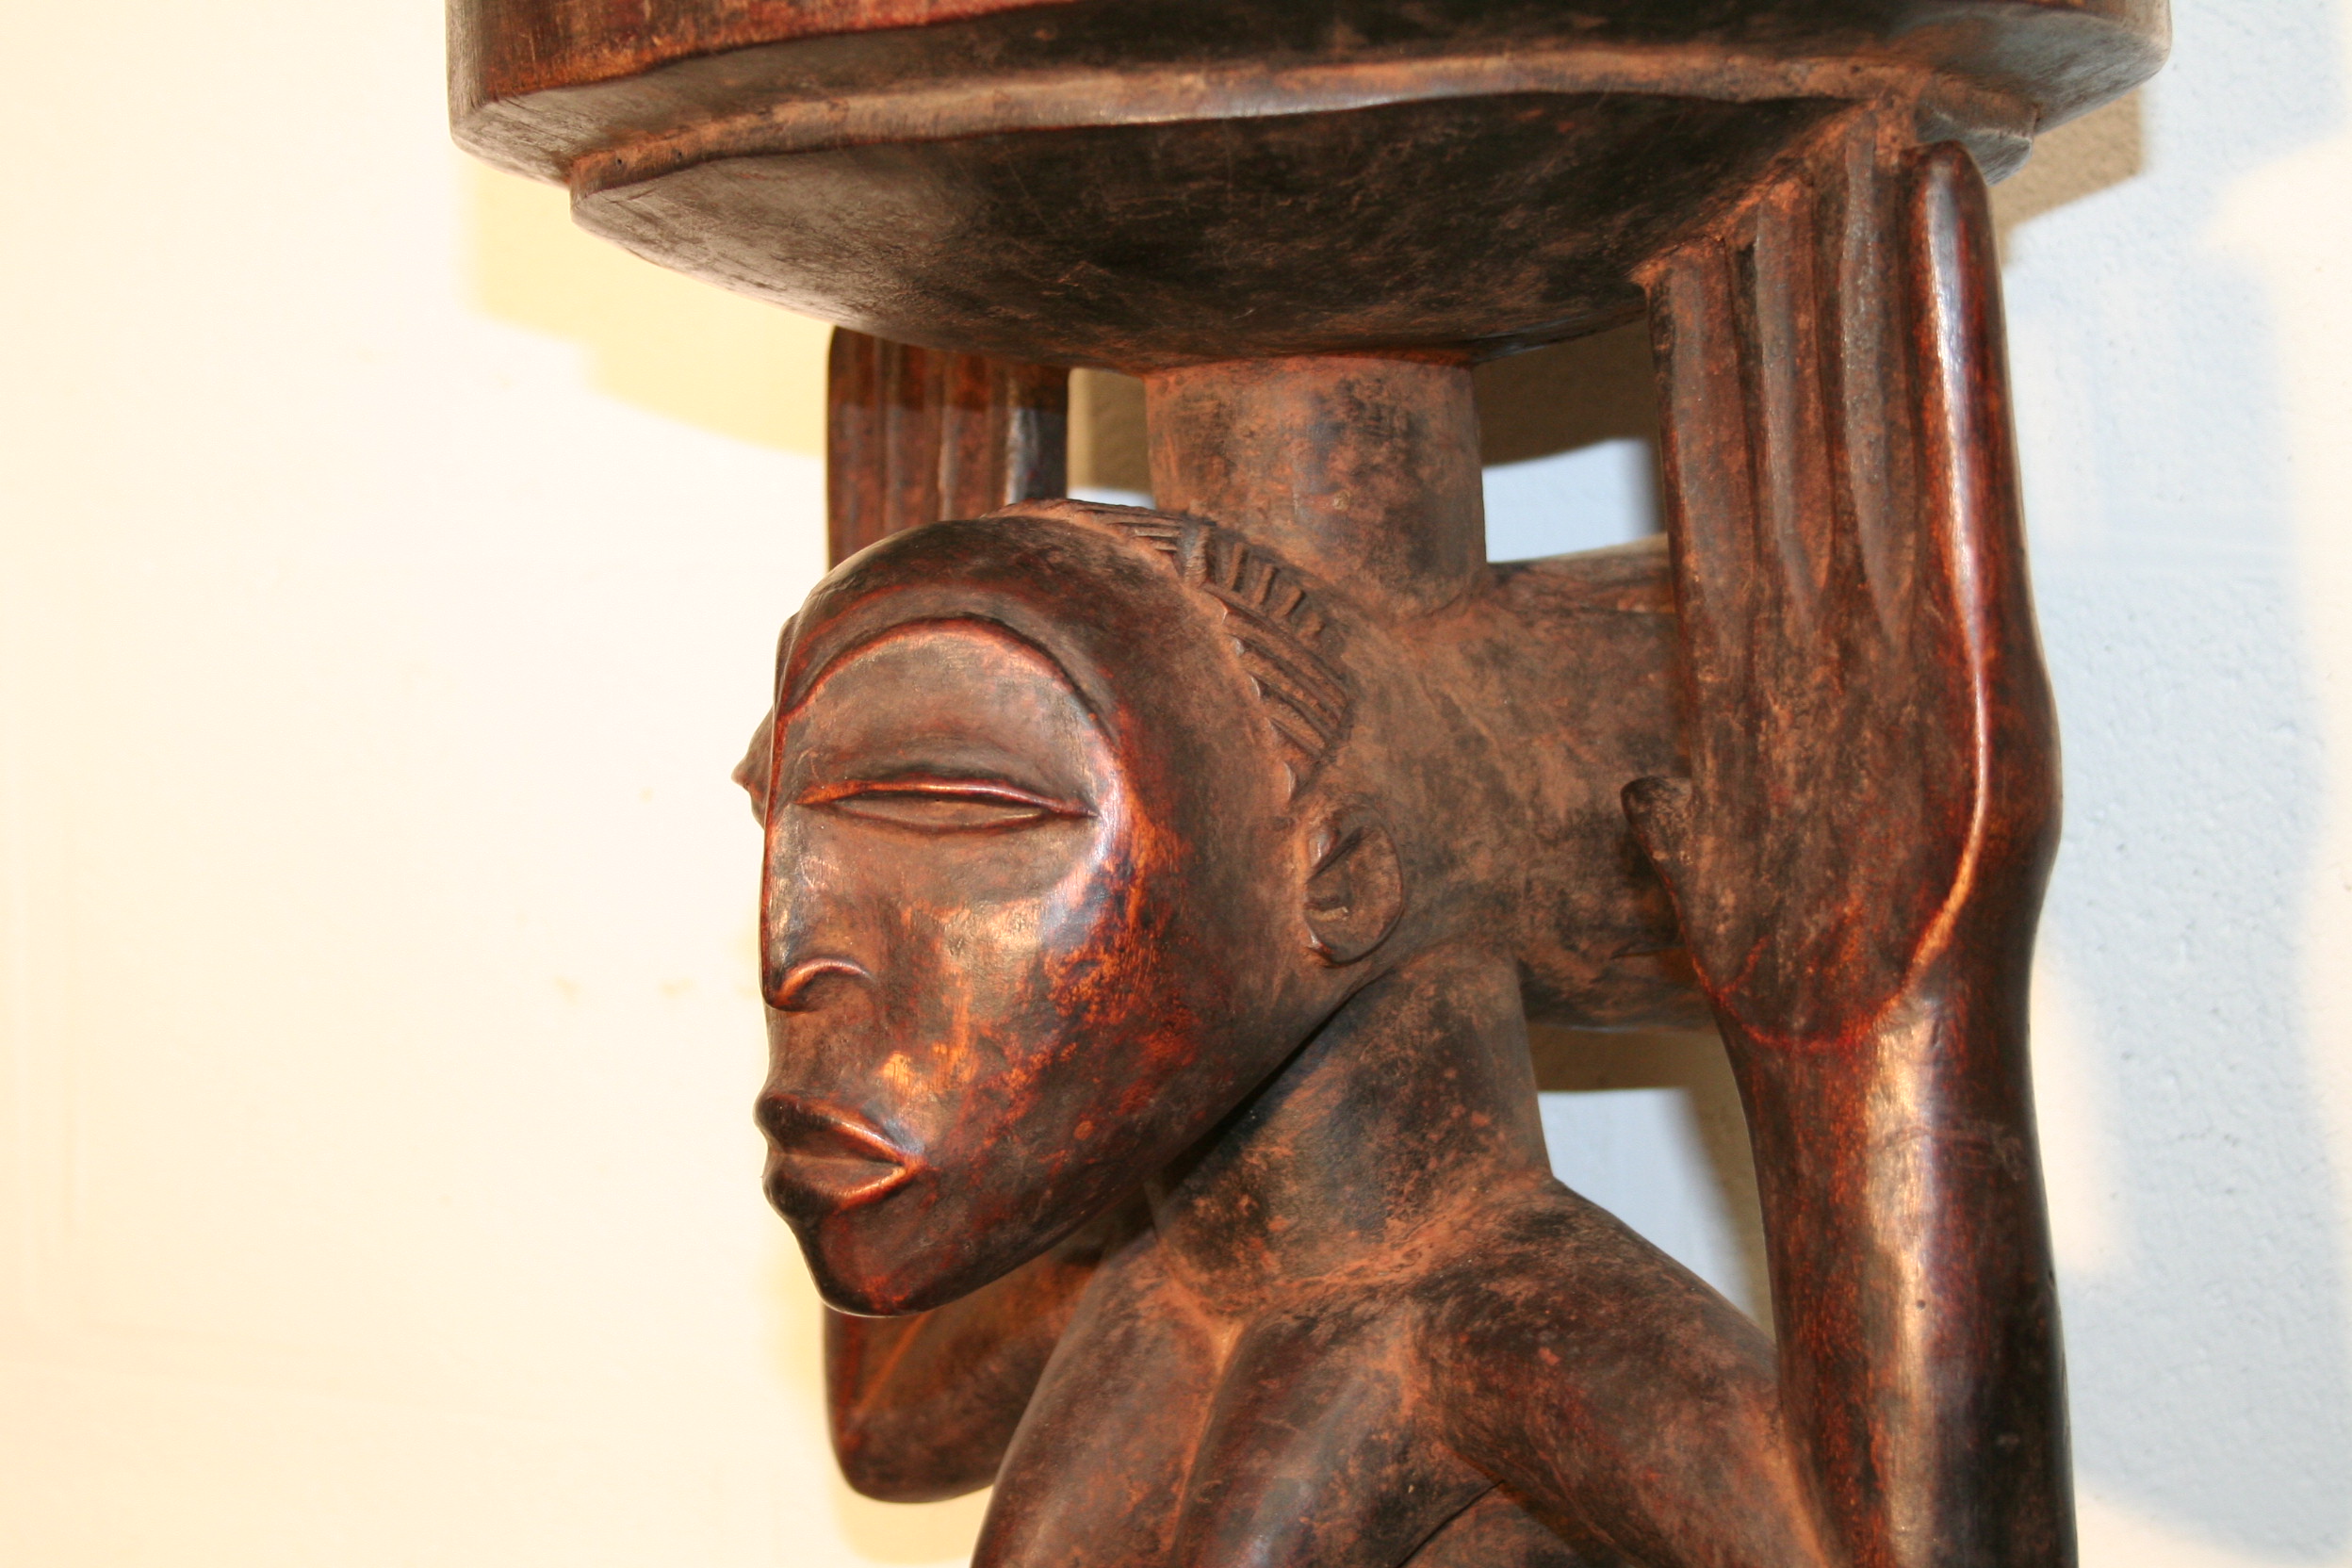 Luba(cariatide), d`afrique : R.d.du Congo, statuette Luba(cariatide), masque ancien africain Luba(cariatide), art du R.d.du Congo - Art Africain, collection privées Belgique. Statue africaine de la tribu des Luba(cariatide), provenant du R.d.du Congo, 1649:siège cariatide Luba.représentant une femme agenouillée soutenant un plateau de ses deux mains Elle a une coiffure  Luba très élaborée.Milieu du 20eme sc.

Kariatide LUBA stoel,met geknielde vrouw die met beide handen de zitting vasthoud
Ze heeft ook een mooie Luba haartooi.Midden de 20ste  eeuw







. art,culture,masque,statue,statuette,pot,ivoire,exposition,expo,masque original,masques,statues,statuettes,pots,expositions,expo,masques originaux,collectionneur d`art,art africain,culture africaine,masque africain,statue africaine,statuette africaine,pot africain,ivoire africain,exposition africain,expo africain,masque origina africainl,masques africains,statues africaines,statuettes africaines,pots africains,expositions africaines,expo africaines,masques originaux  africains,collectionneur d`art africain